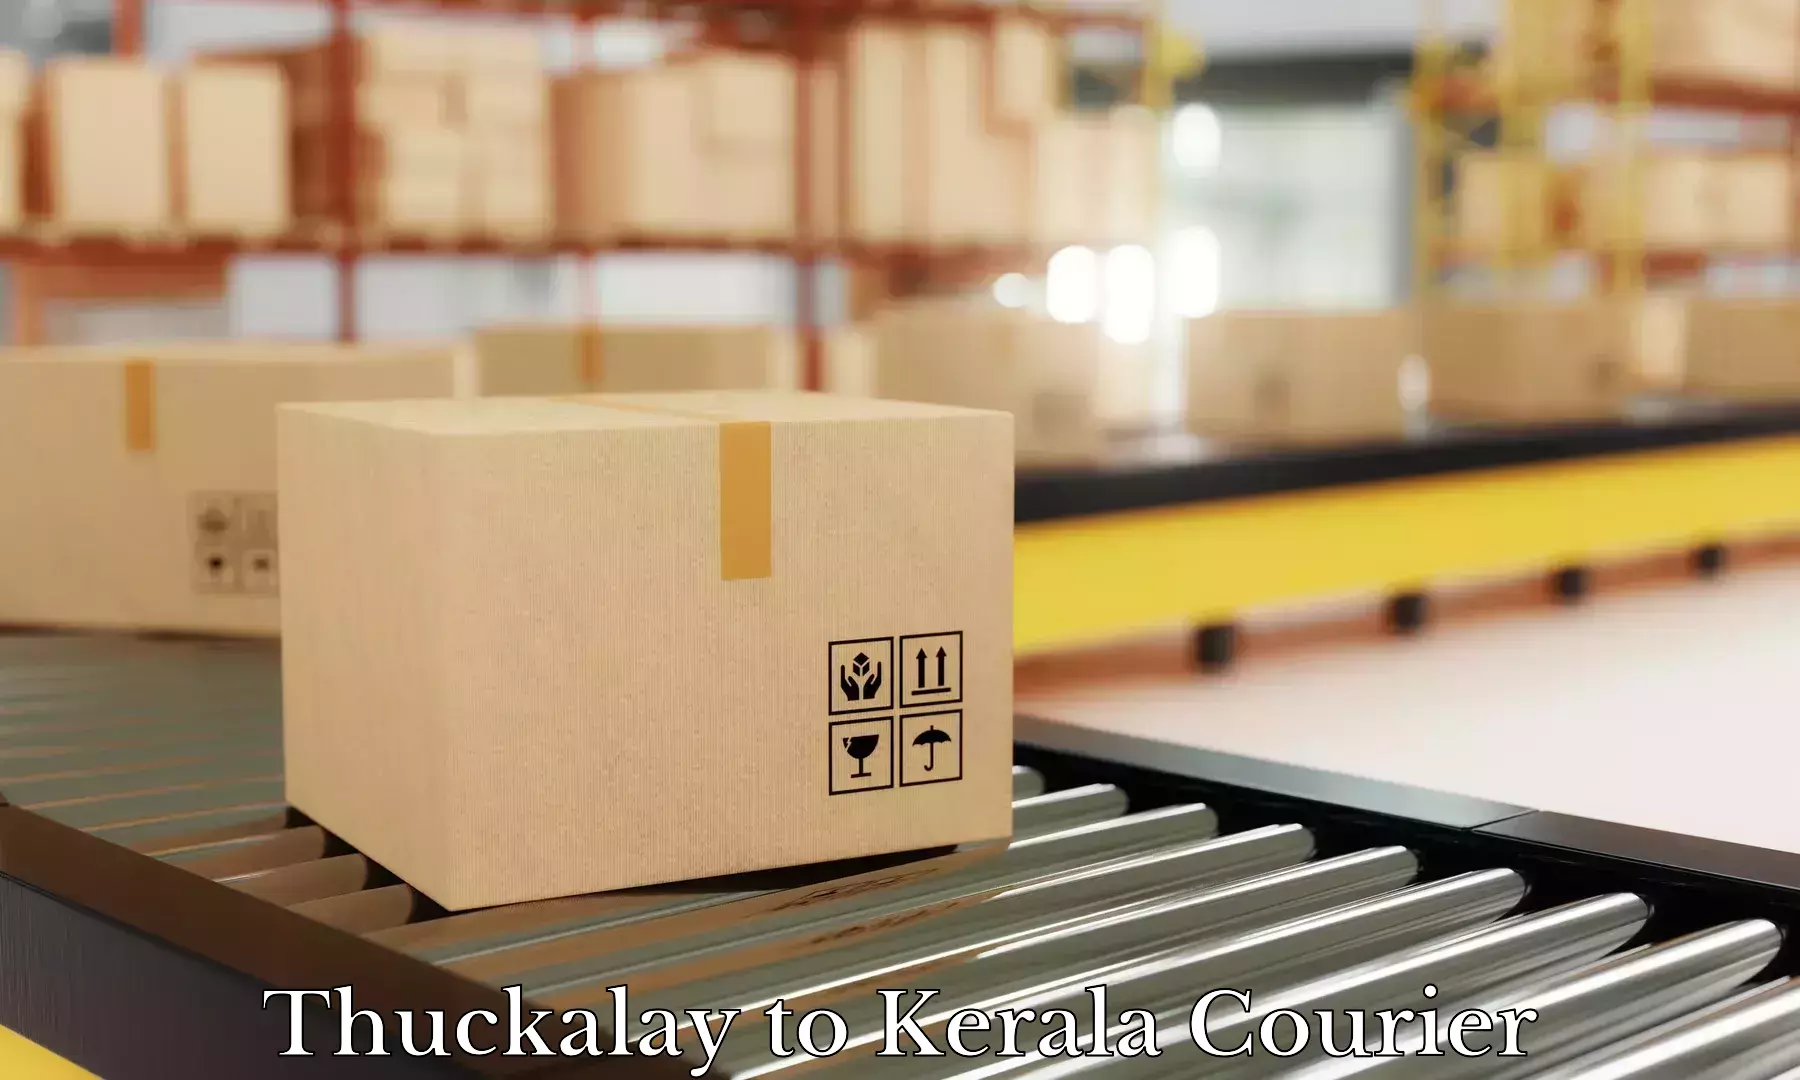 Baggage courier calculator Thuckalay to Kakkayam